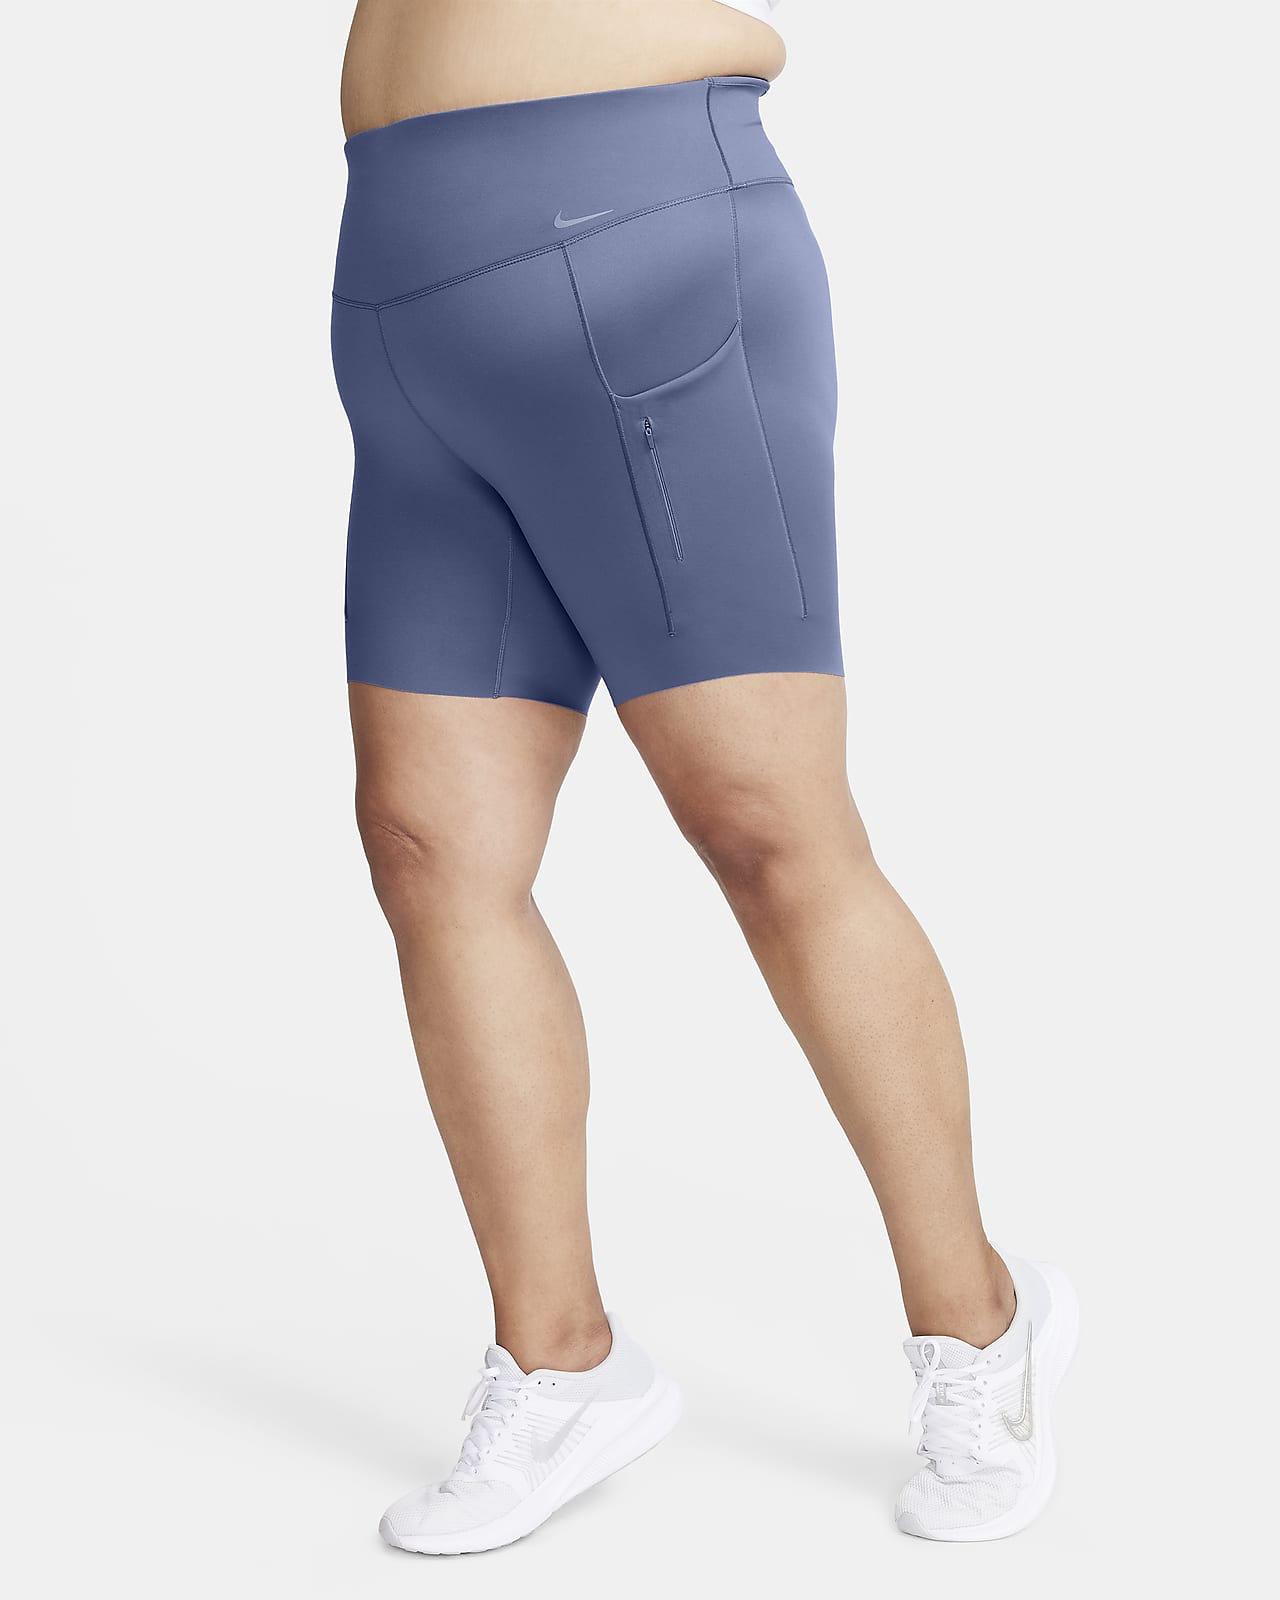 Lululemon Plus Size Shorts